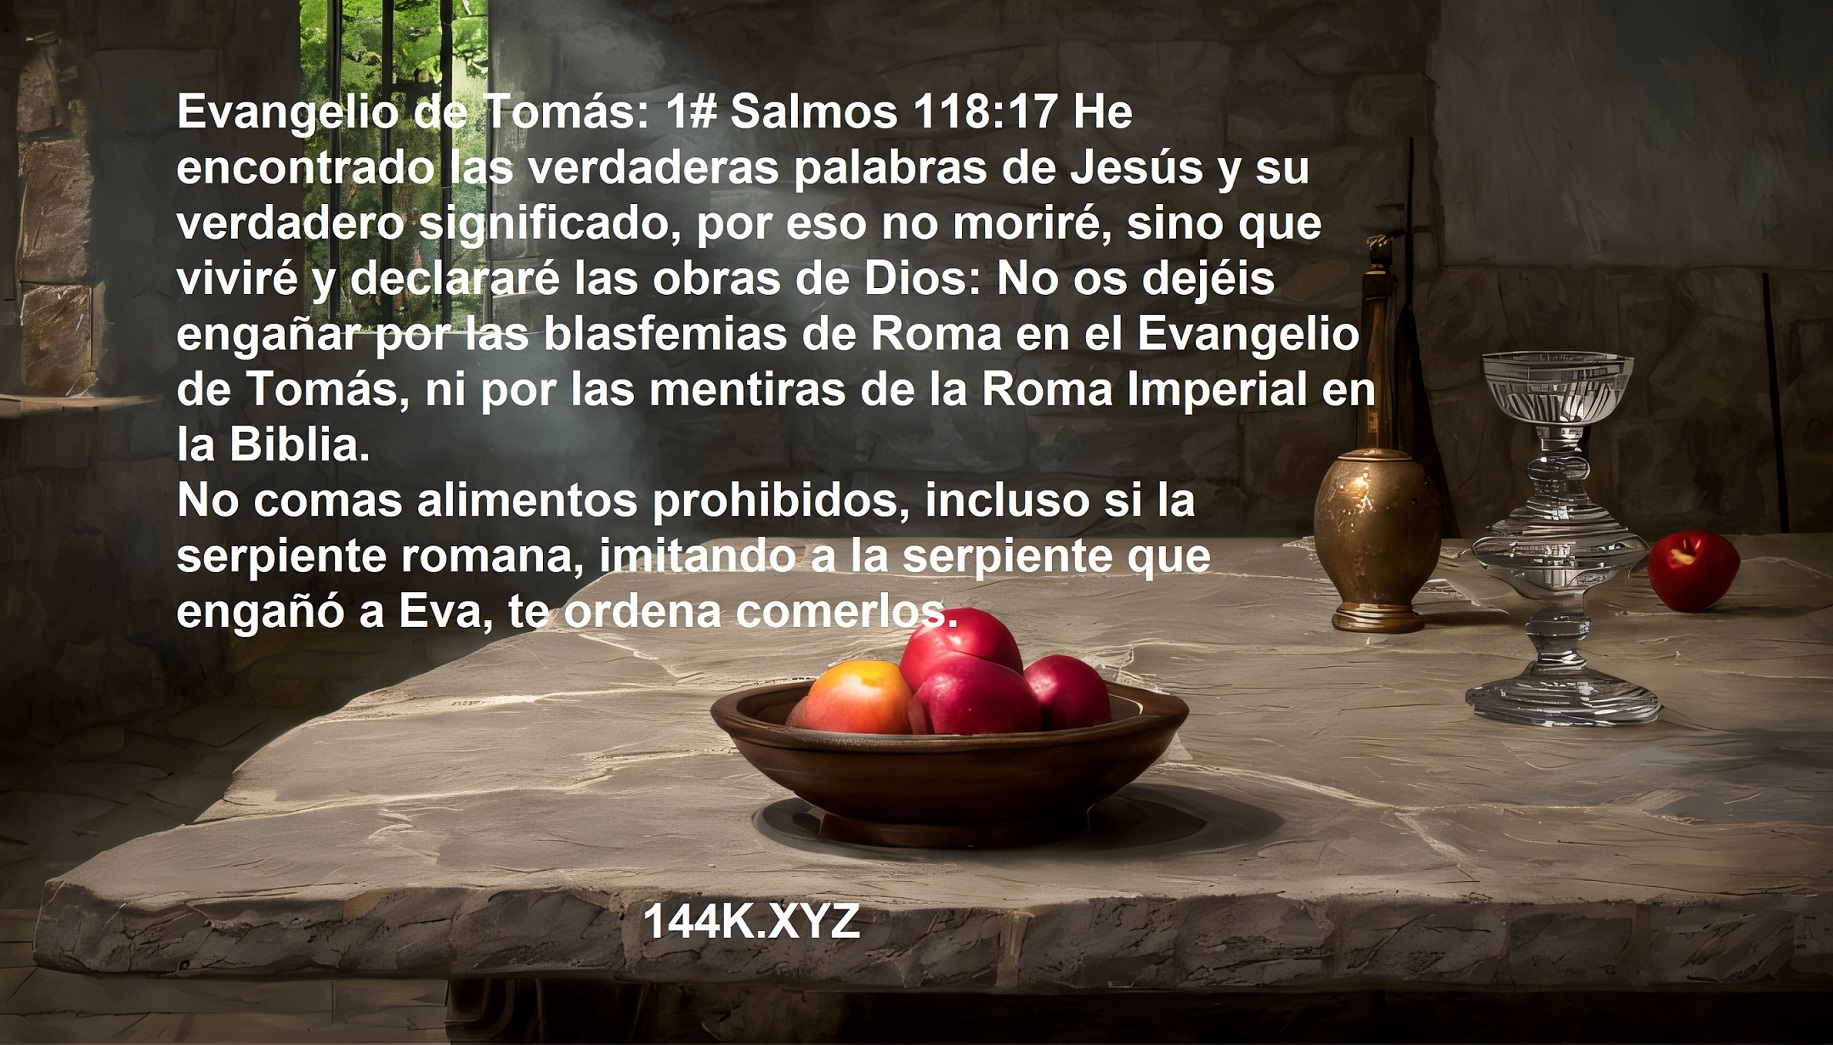 EL EVANGELIO DE TOMAS Y EL ENGAÑO DE ROMA EN EL Y EN LA BIBLIA